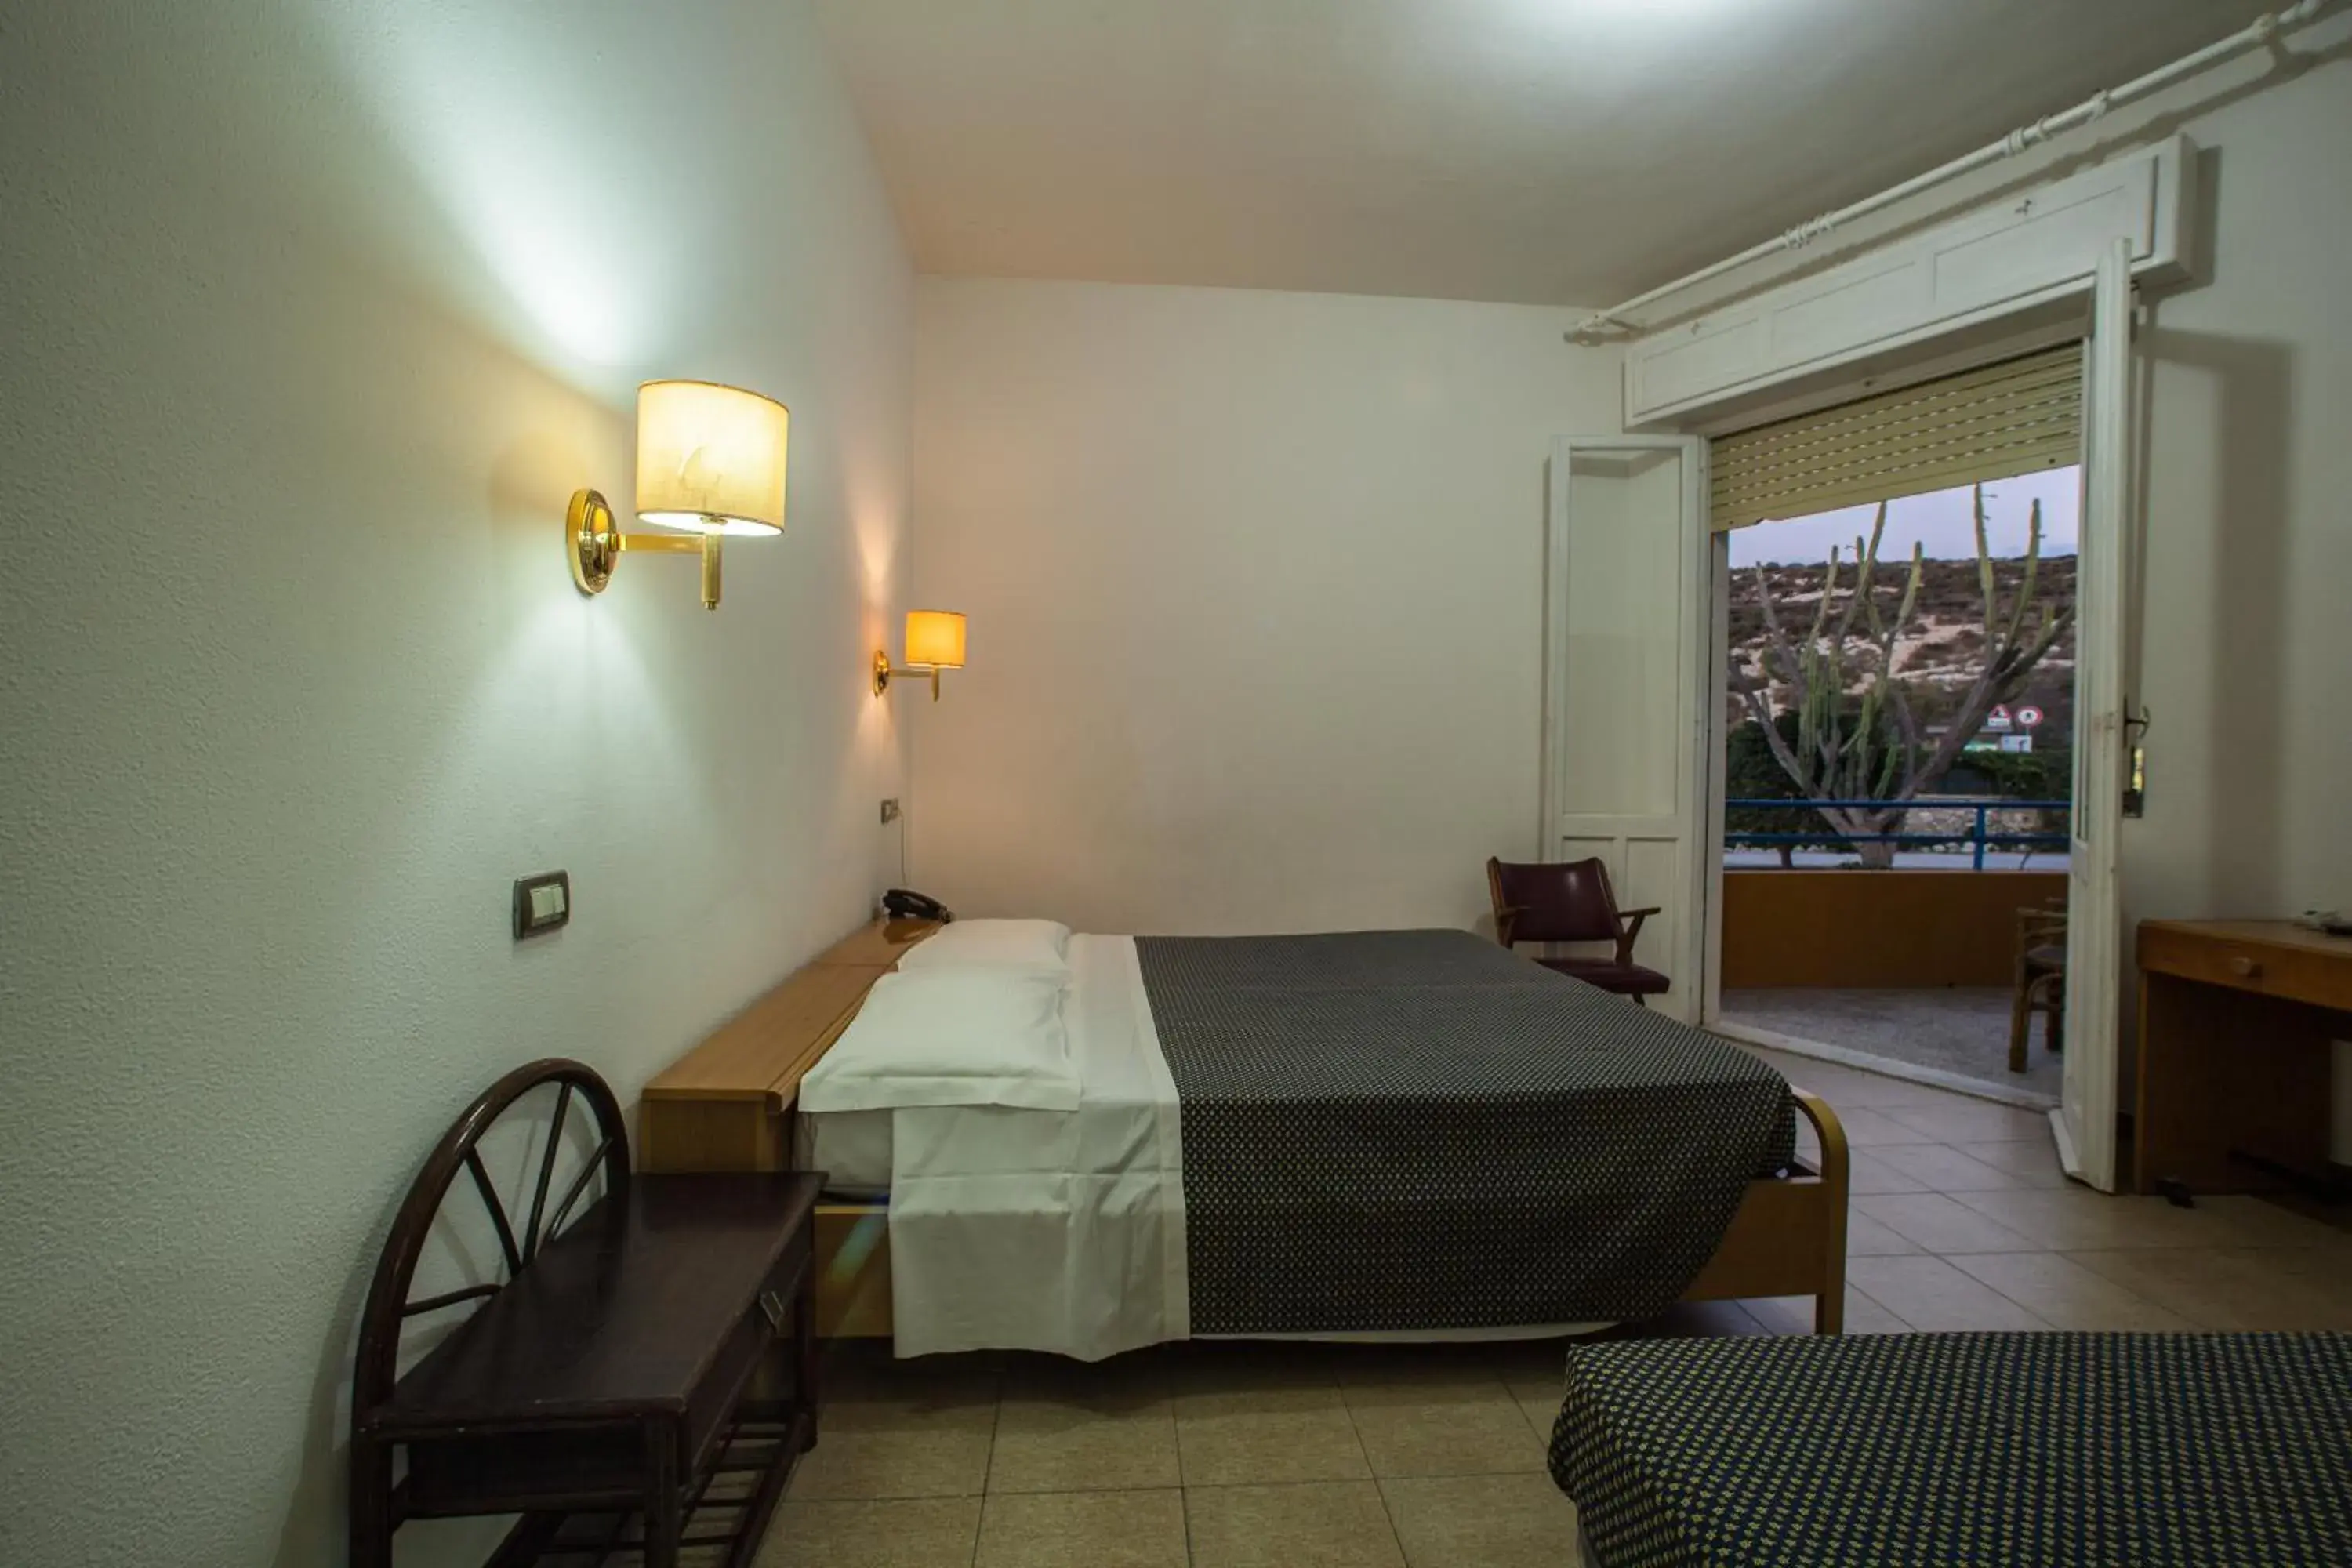 Bedroom, Room Photo in Hotel Calamosca